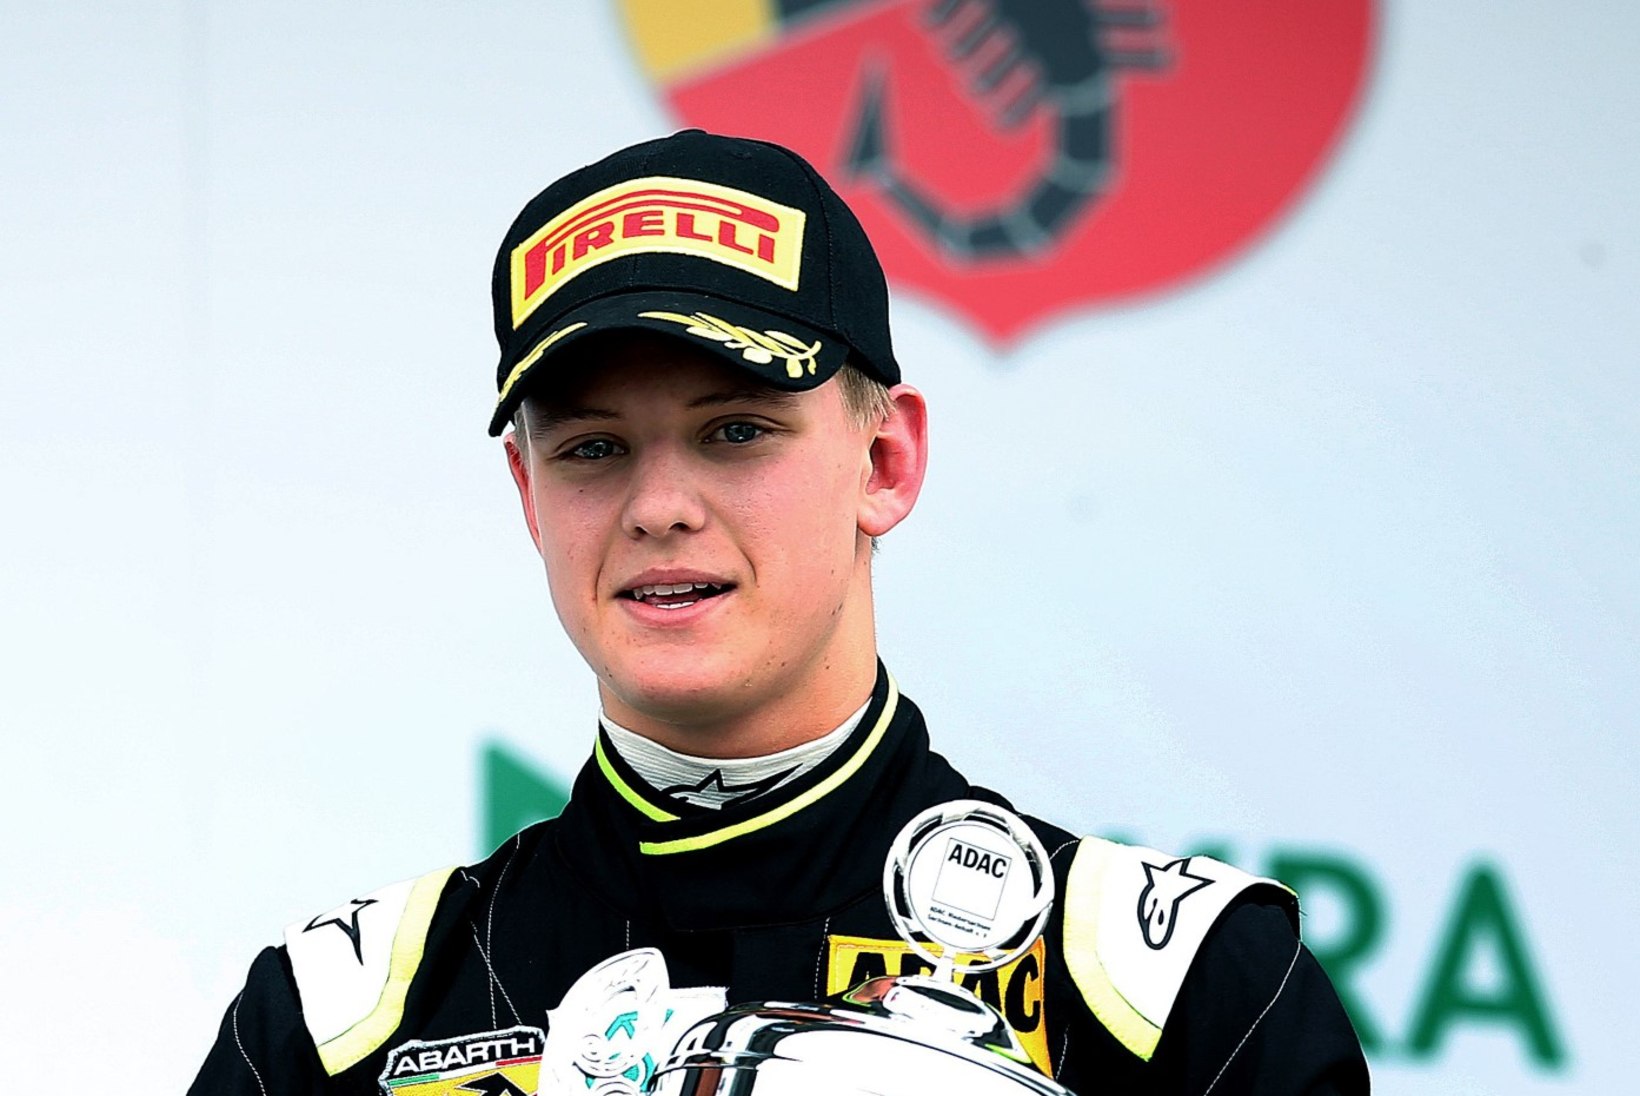 KÄBI EI KUKU KÄNNUST KAUGELE: Schumacheri poeg võitis vormelisarja etapi, tehes selja prügiseks ka Eesti vormelilootusel